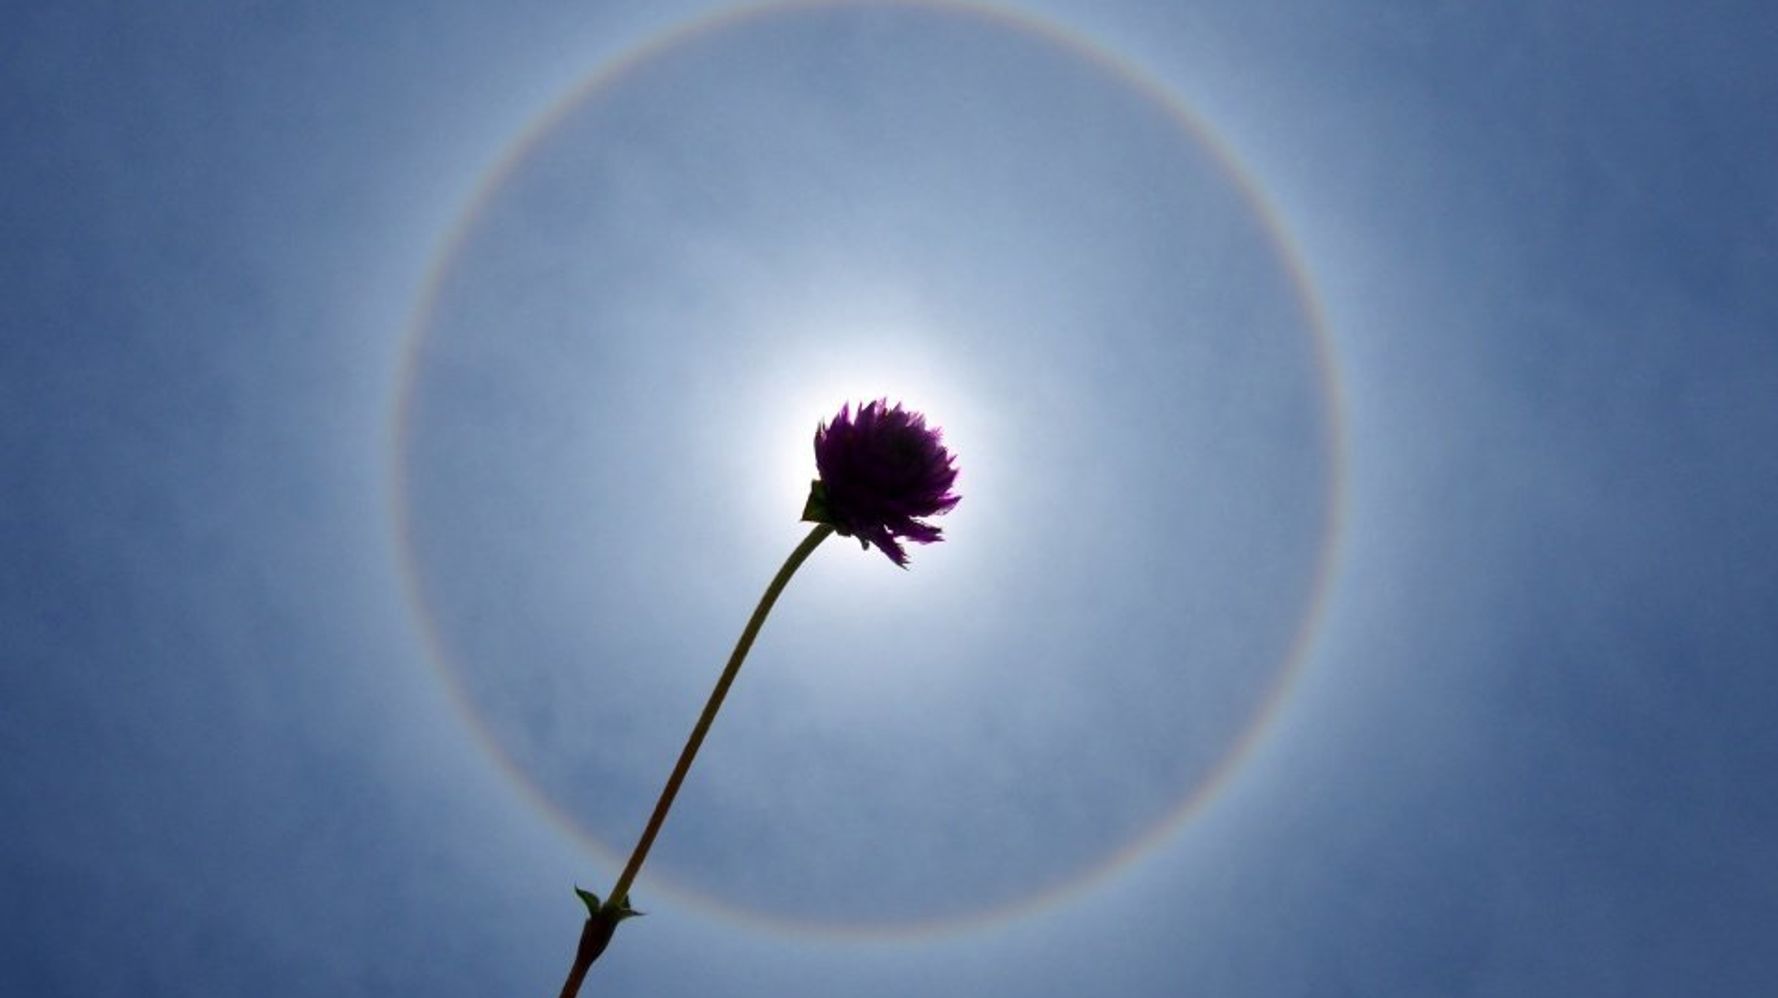 太陽の周りに虹色の輪が出現 名古屋や福岡など広範囲で ハフポスト